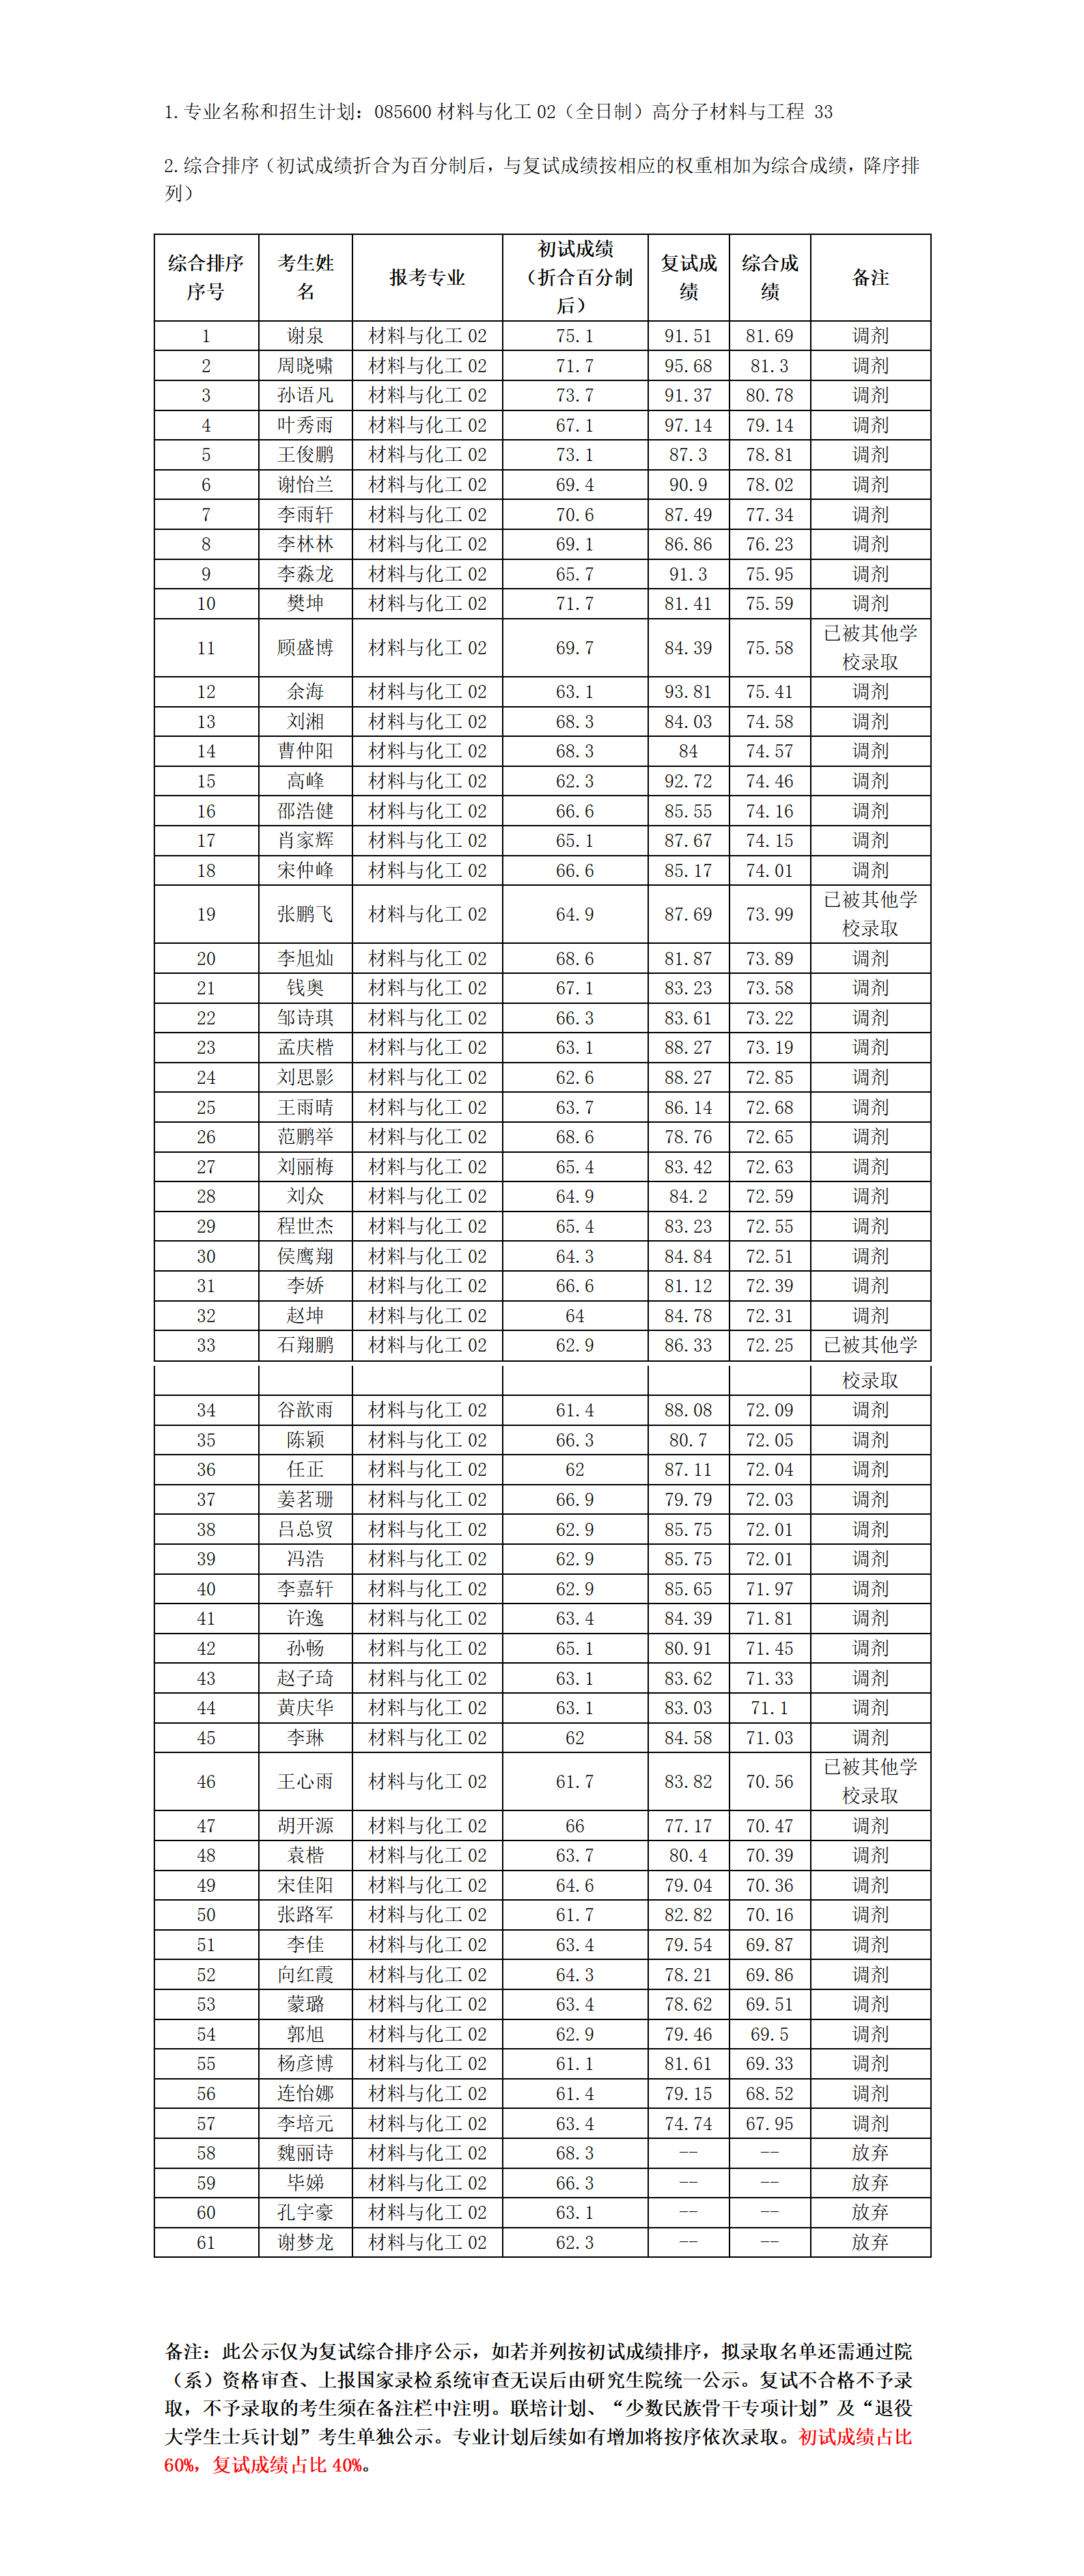 2023年硕士研究生复试结果综合排序公示表（十二）_01.png